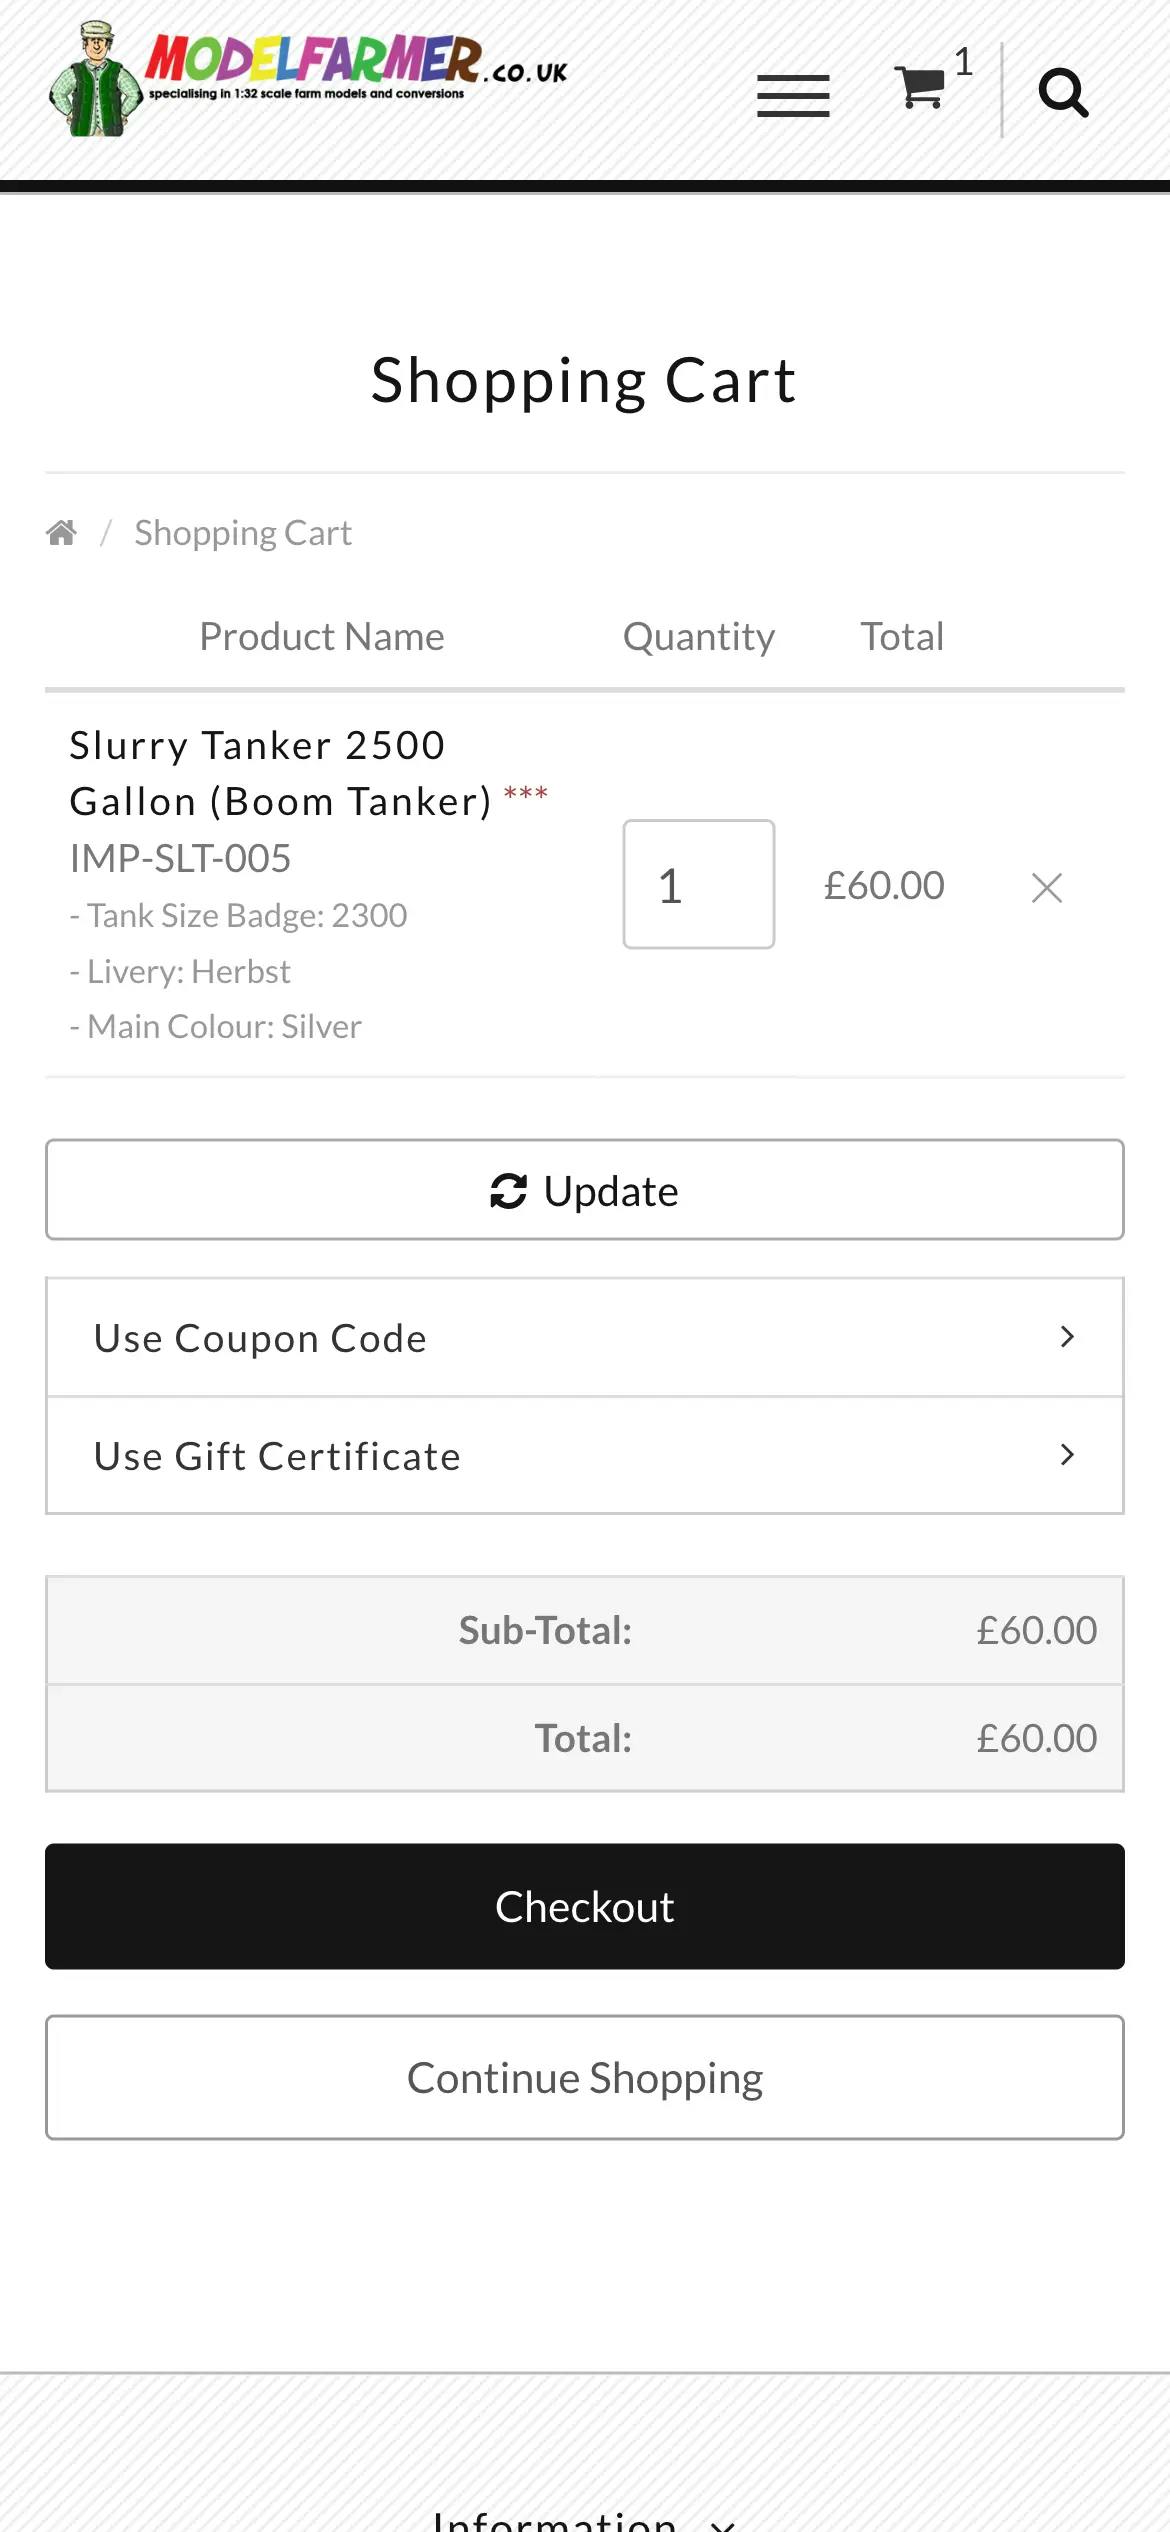 ModelFarmer.co.uk shopping cart page website design on mobile